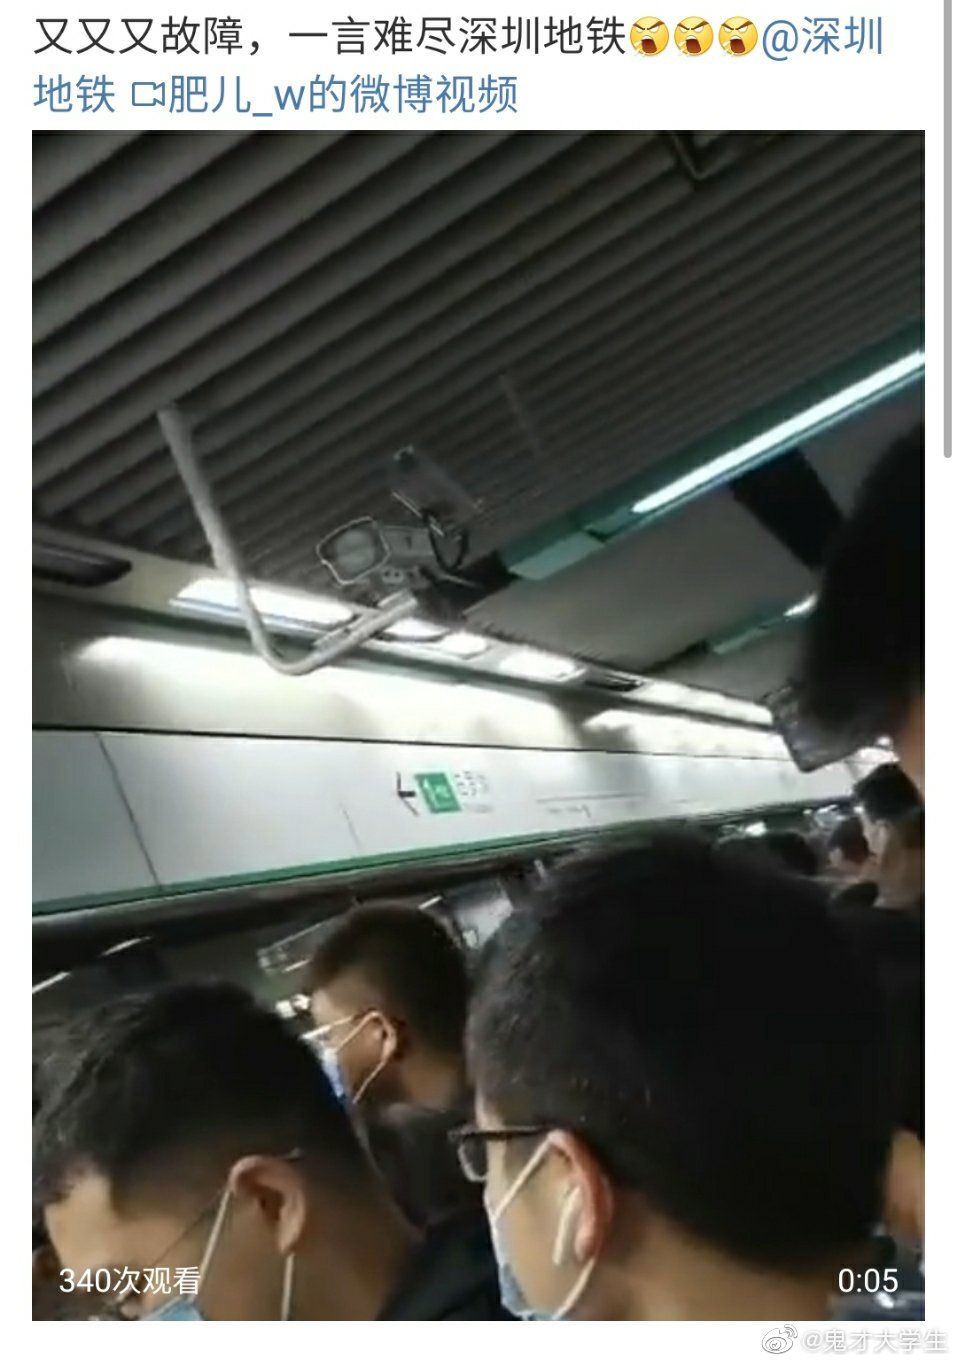 深圳地铁1号线因设备故障 导致部分列车出现延误目前故障已排除